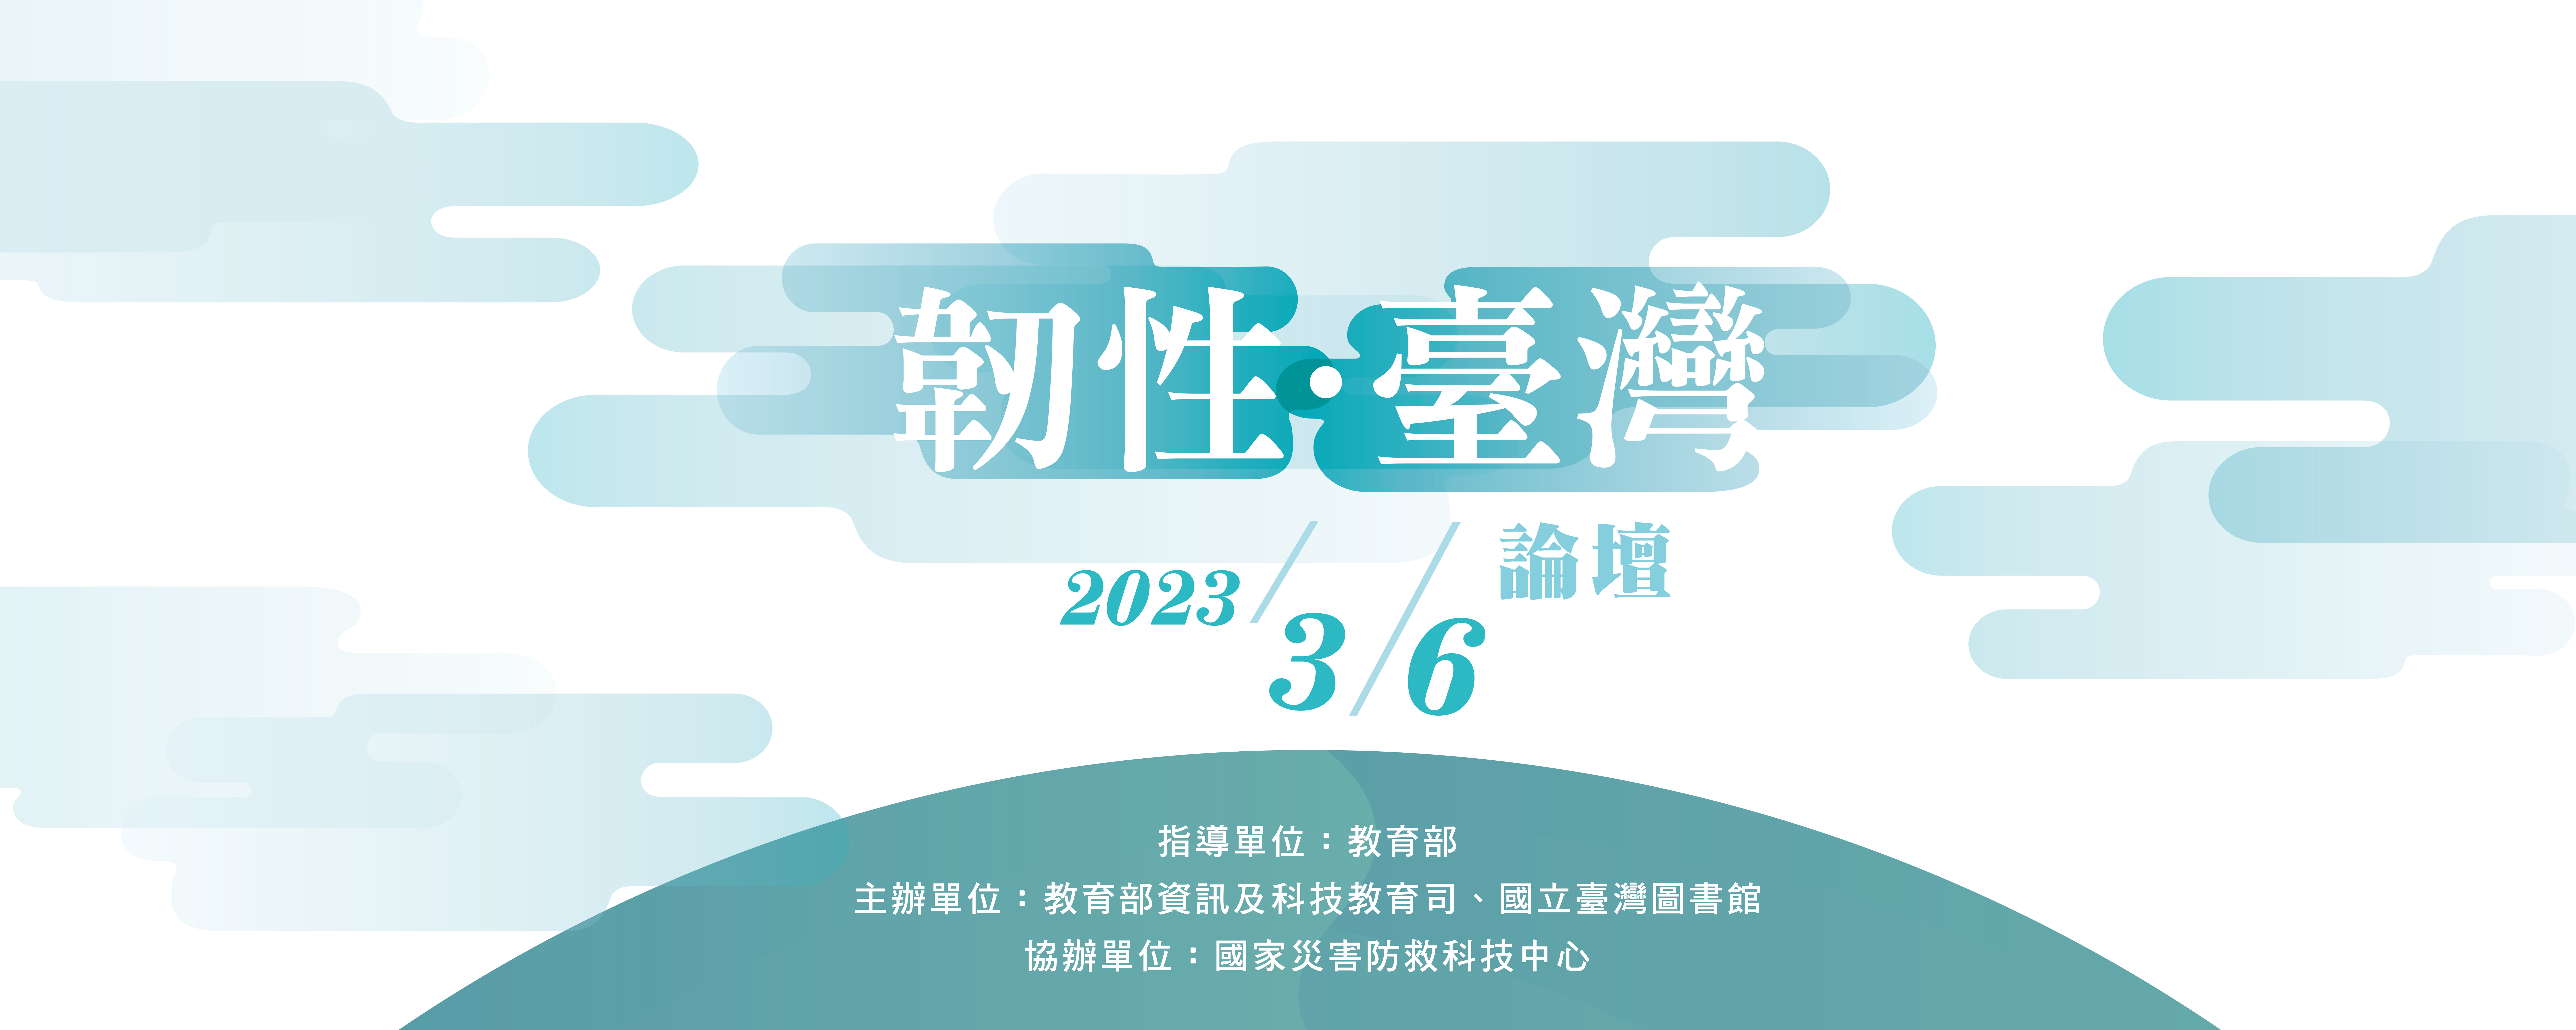 20230217 taiwan